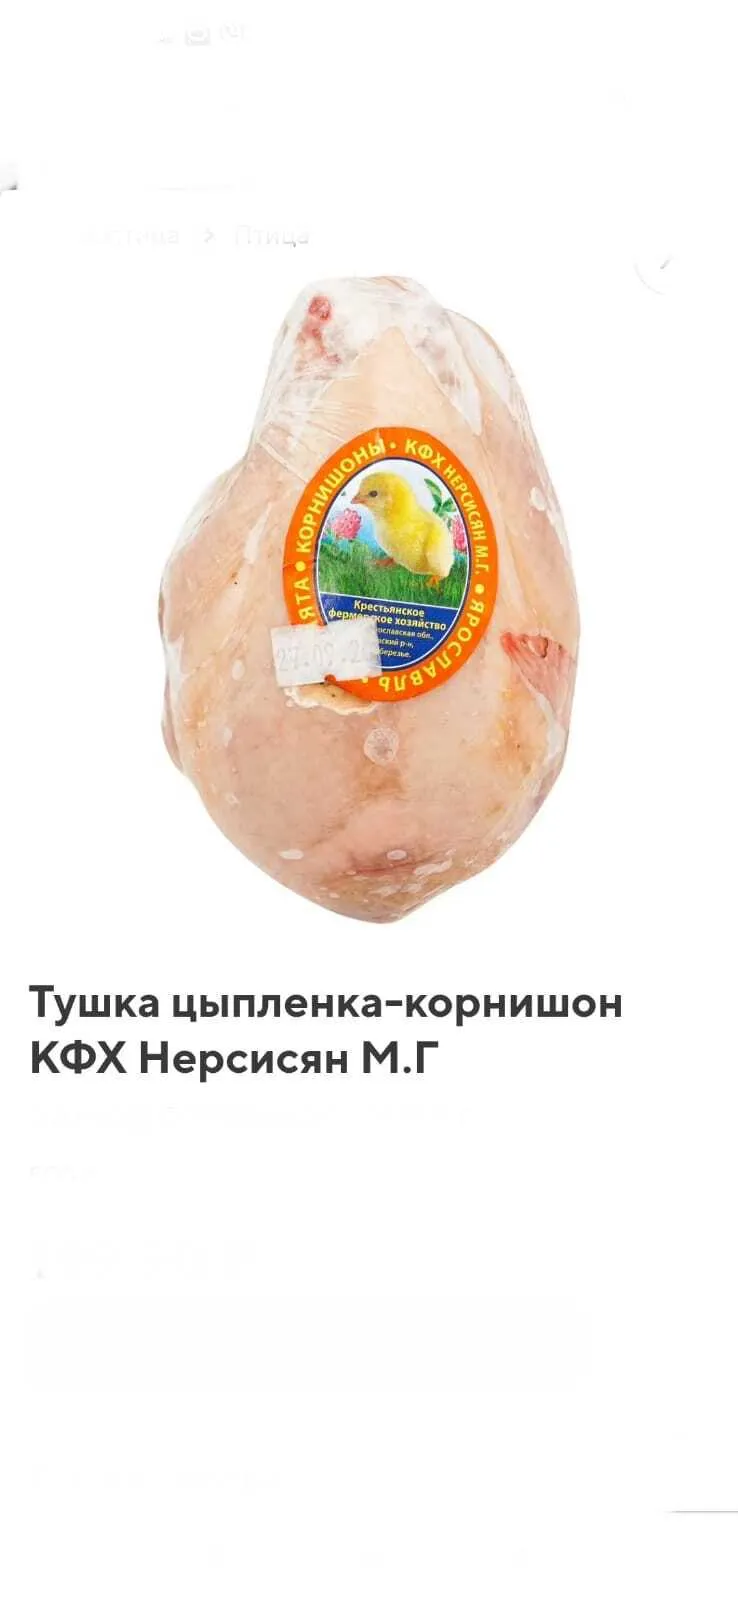 цыплята корнишоны в Москве